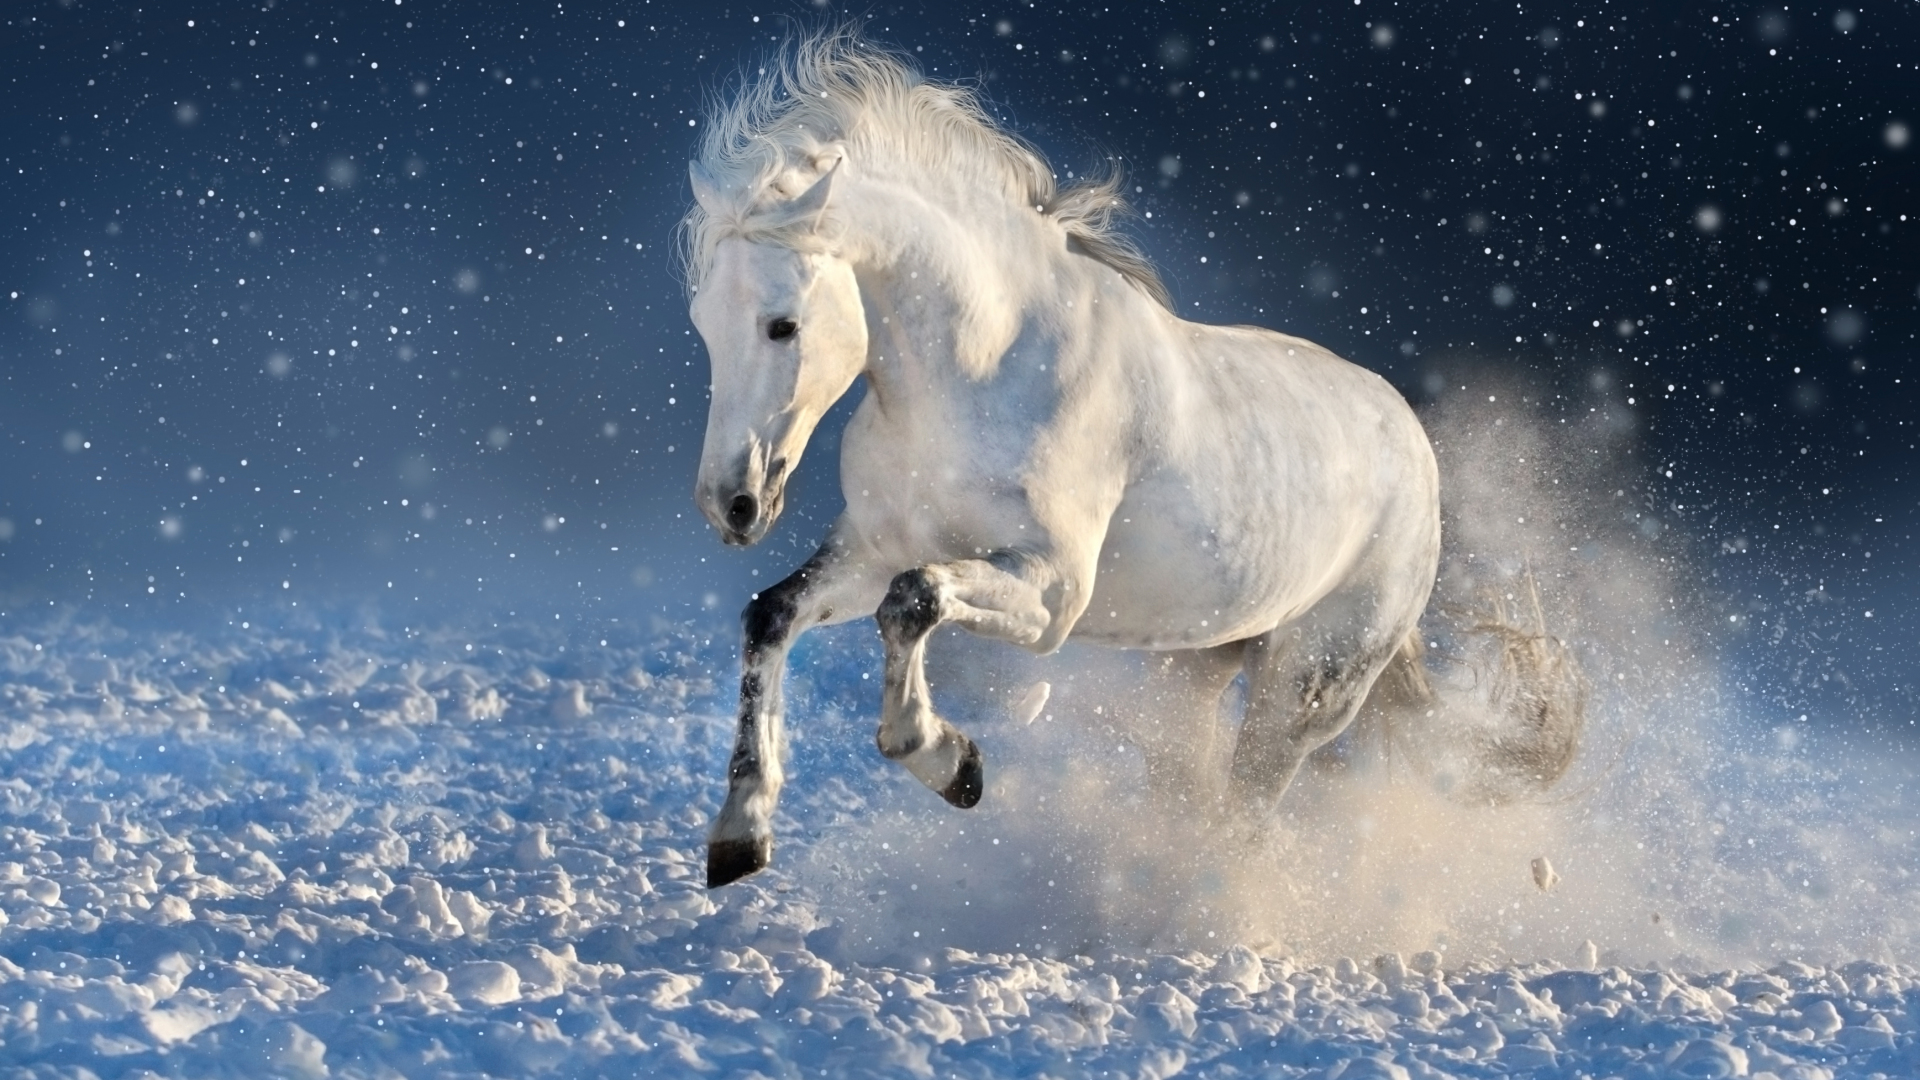 hd portrait wallpaper 1080p,pferd,himmel,mähne,hengst,winter